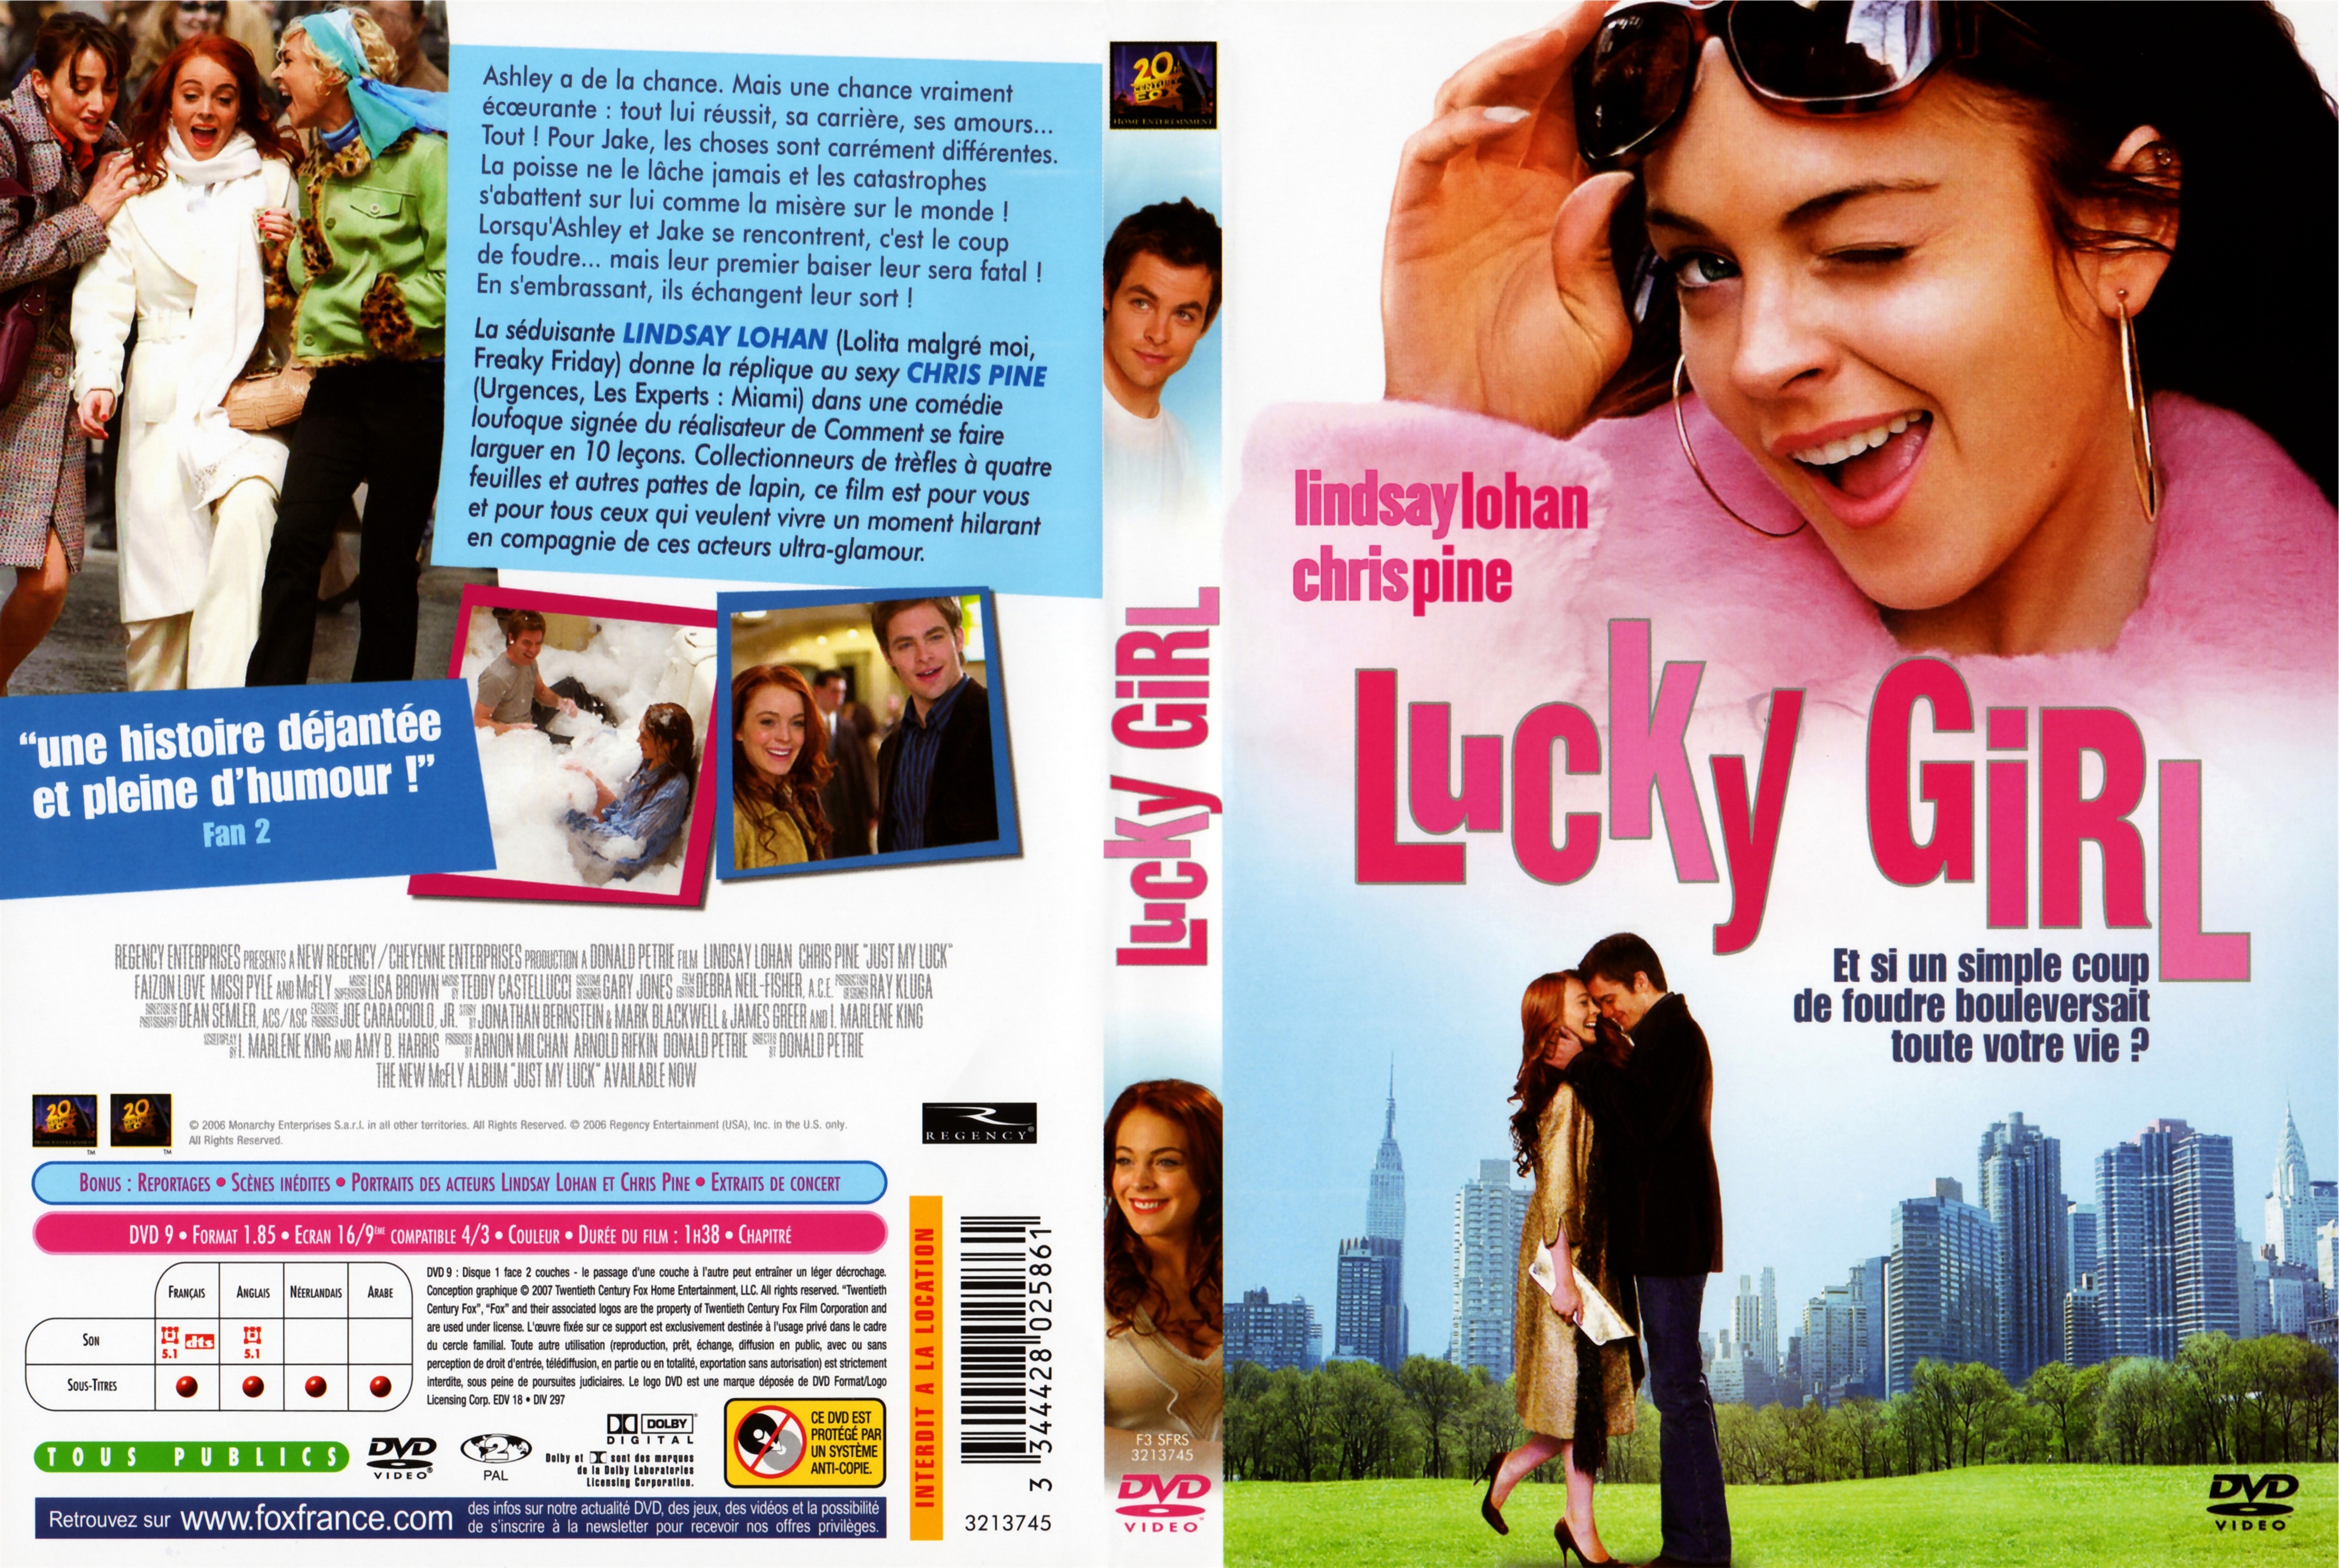 Jaquette DVD Lucky girl